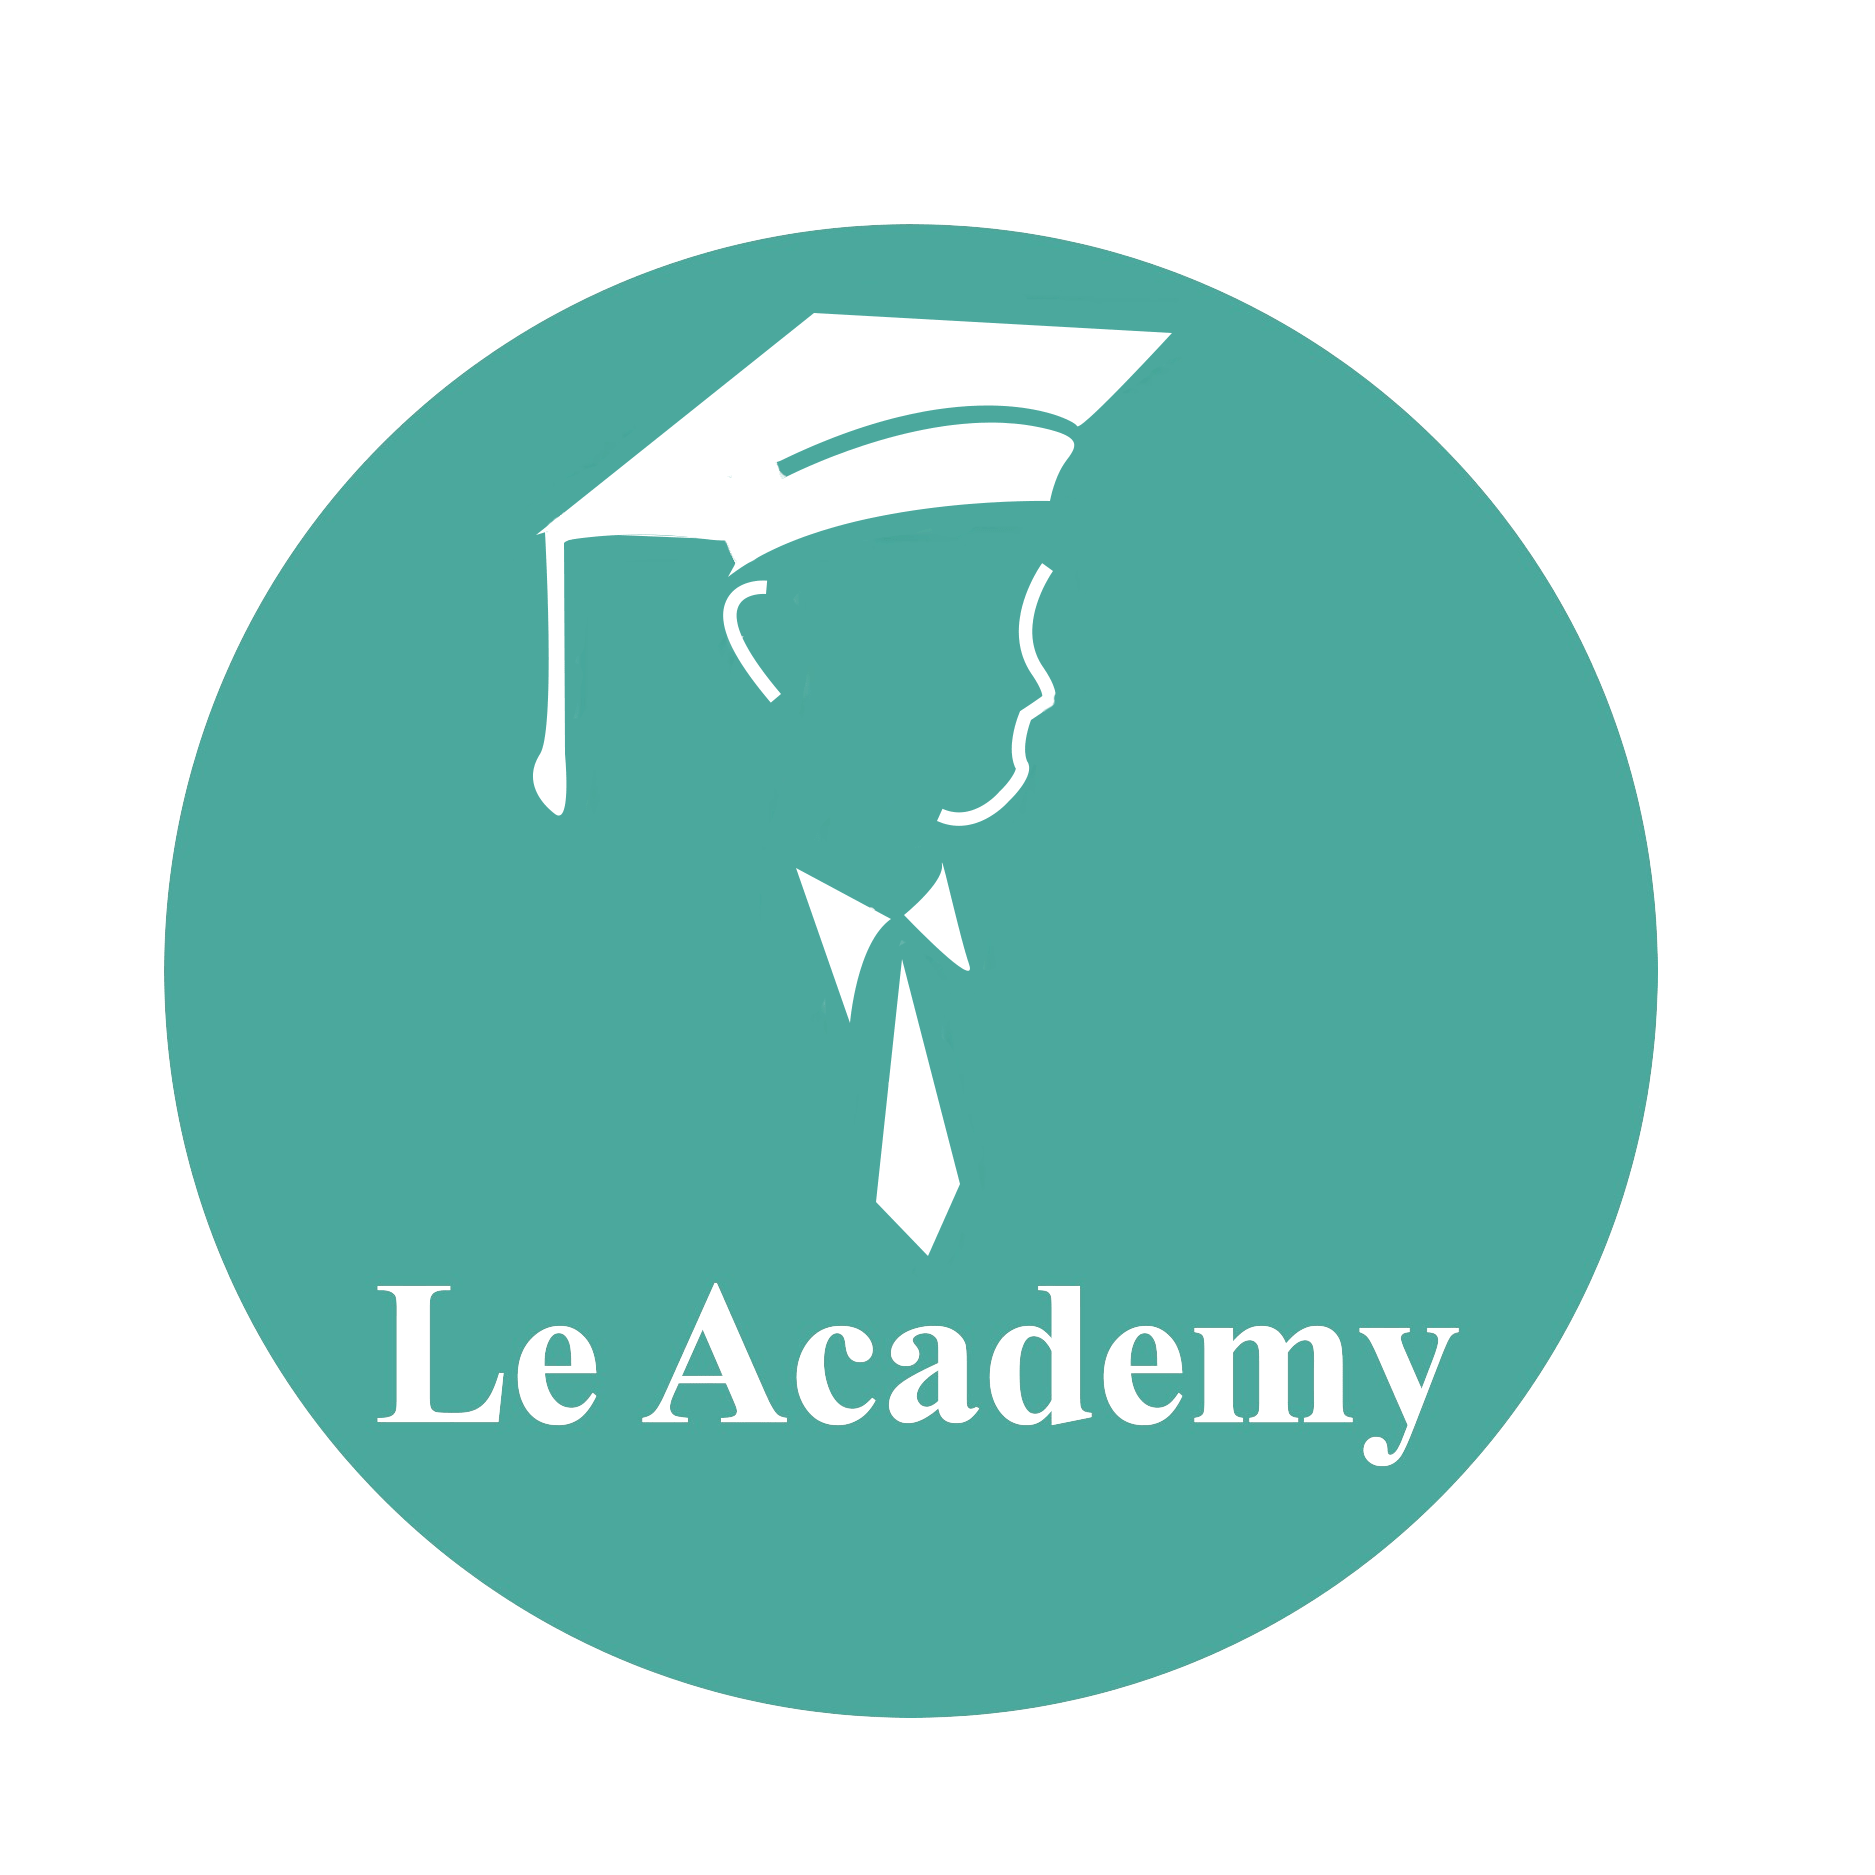 Le Academy